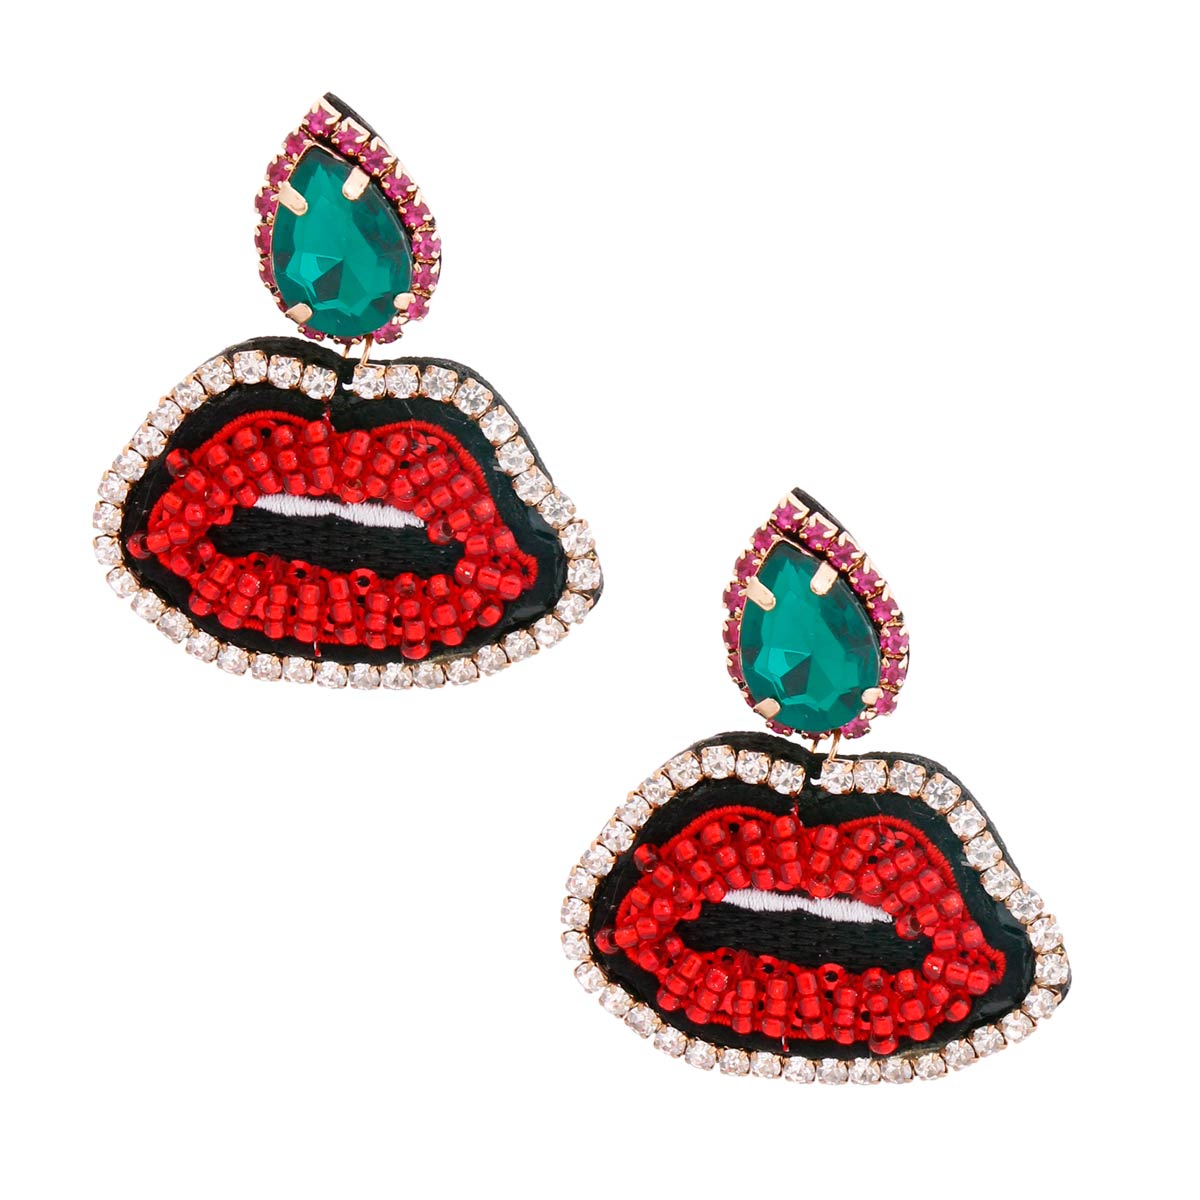 Crystal Teardrop Beaded Embroidery Lips Earrings